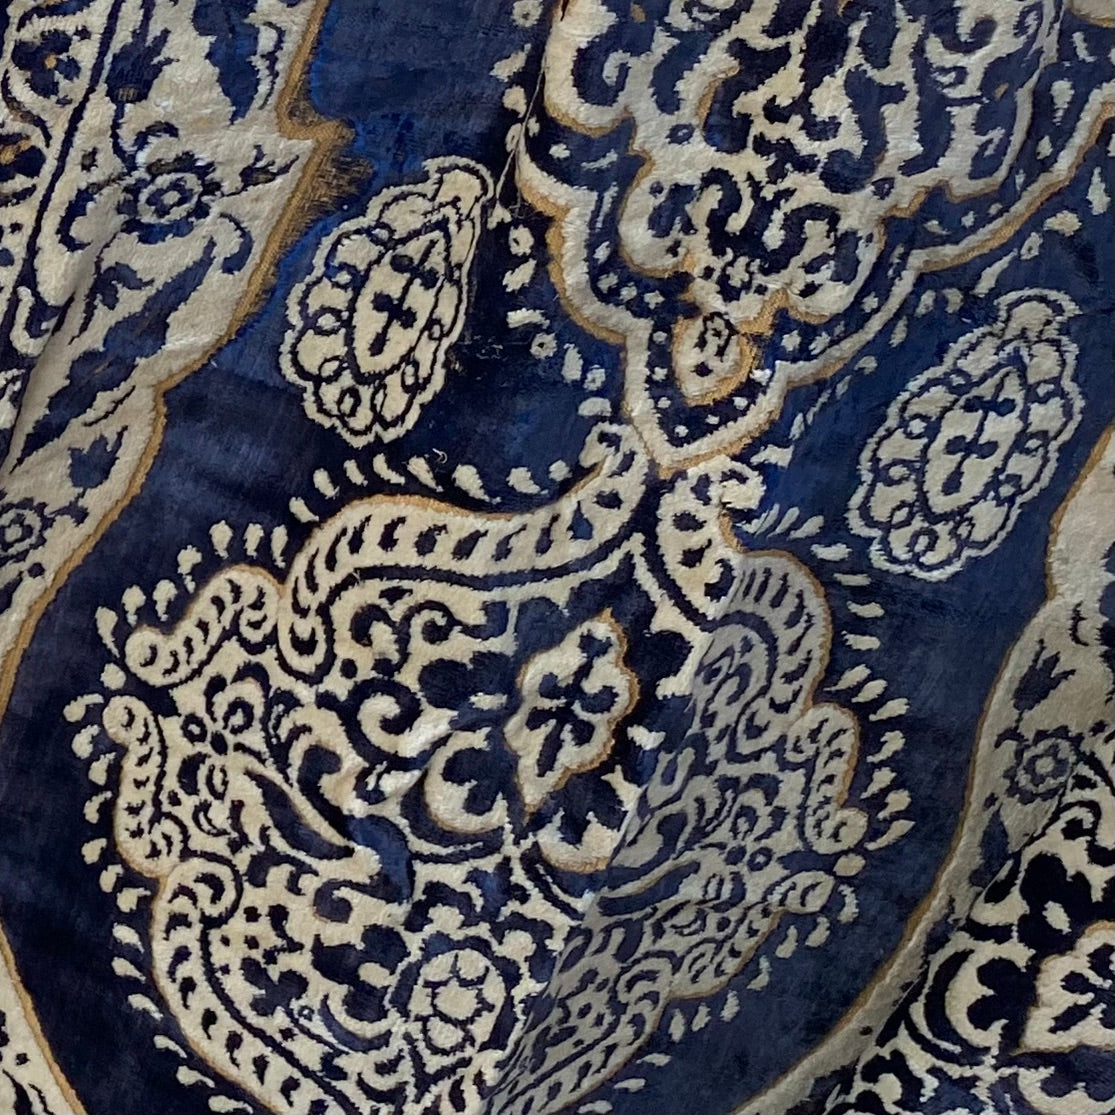 SAHARA Crossbody Bag (blue & cream)